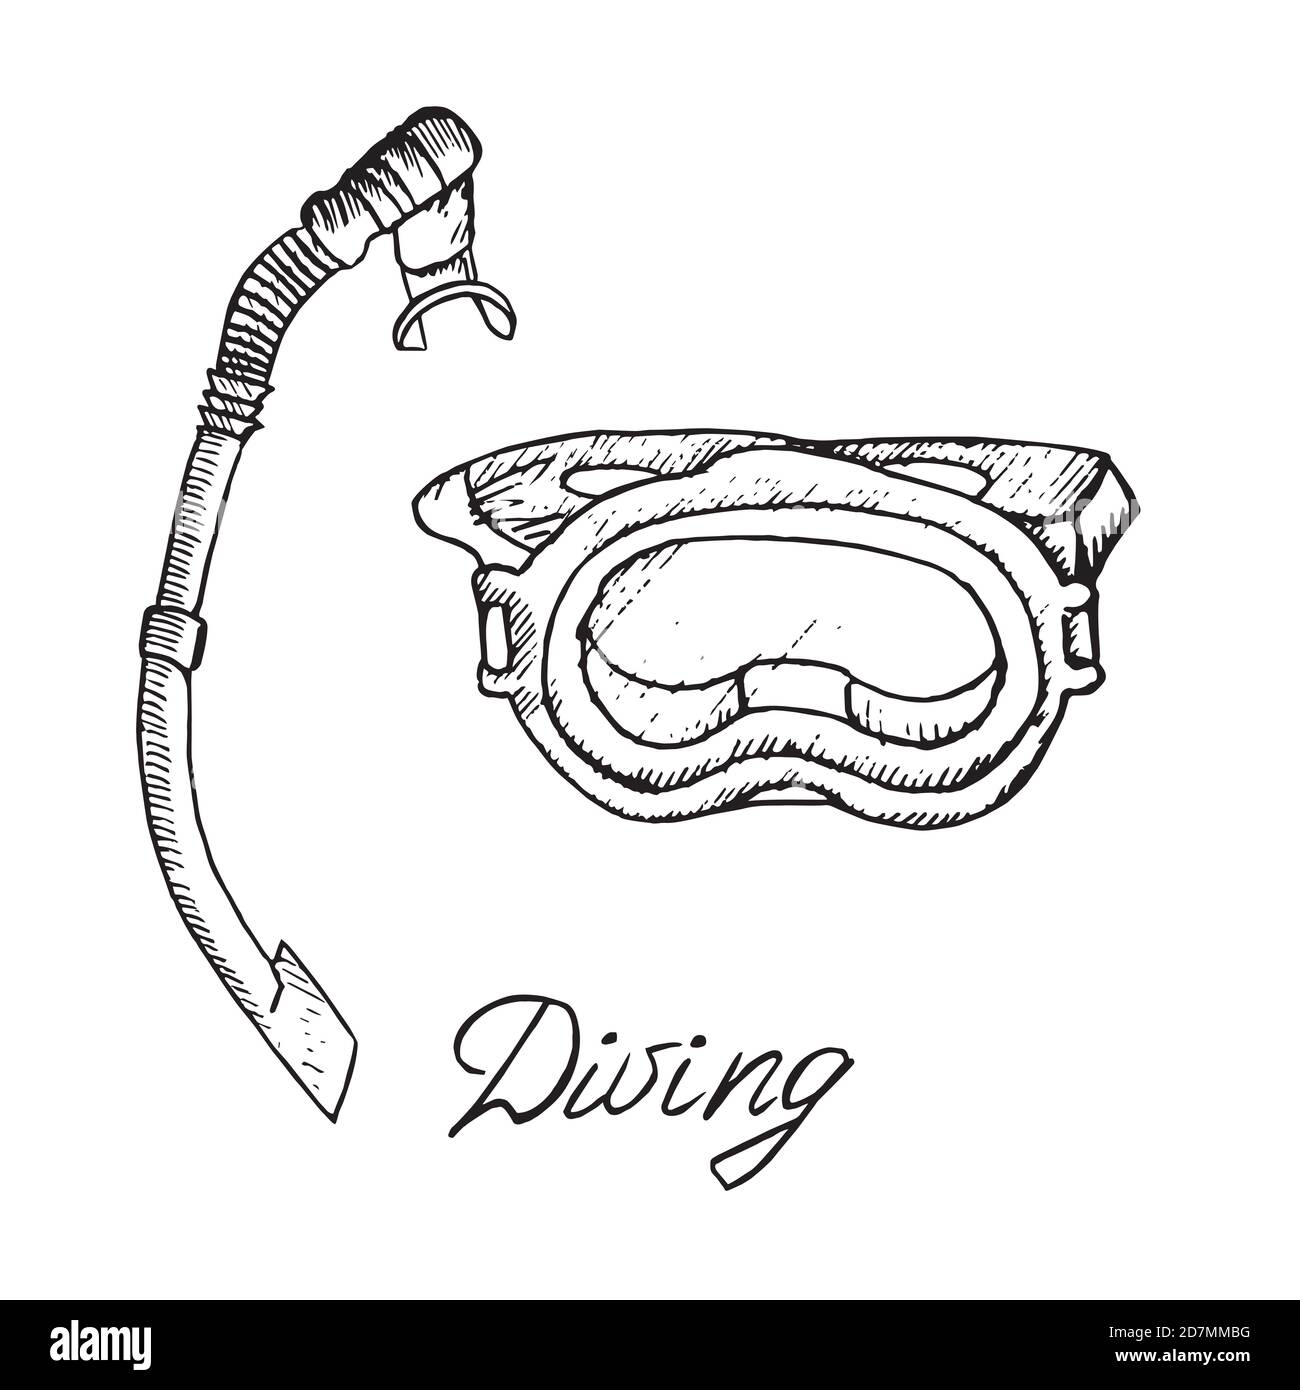 Maschera subacquea e snorkeling, schizzo di doodle disegnato a mano con iscrizione, illustrazione del contorno isolata Foto Stock